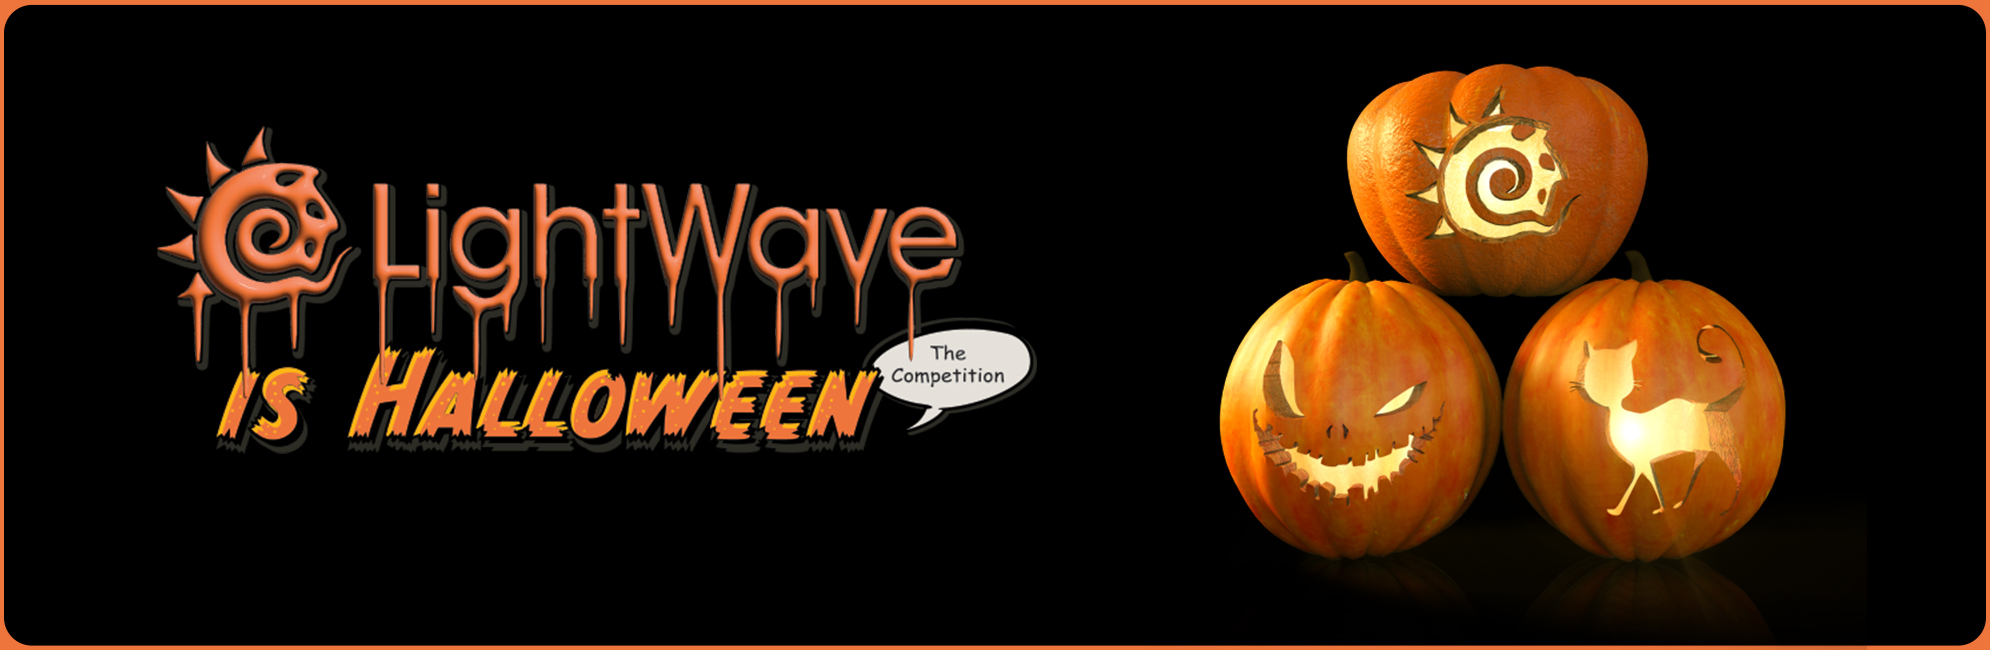 Nome: LightWave is Halloween – LightWave 3D® Promo 20320918.jpg
Visite: 4
Dimensione: 387.4 KB